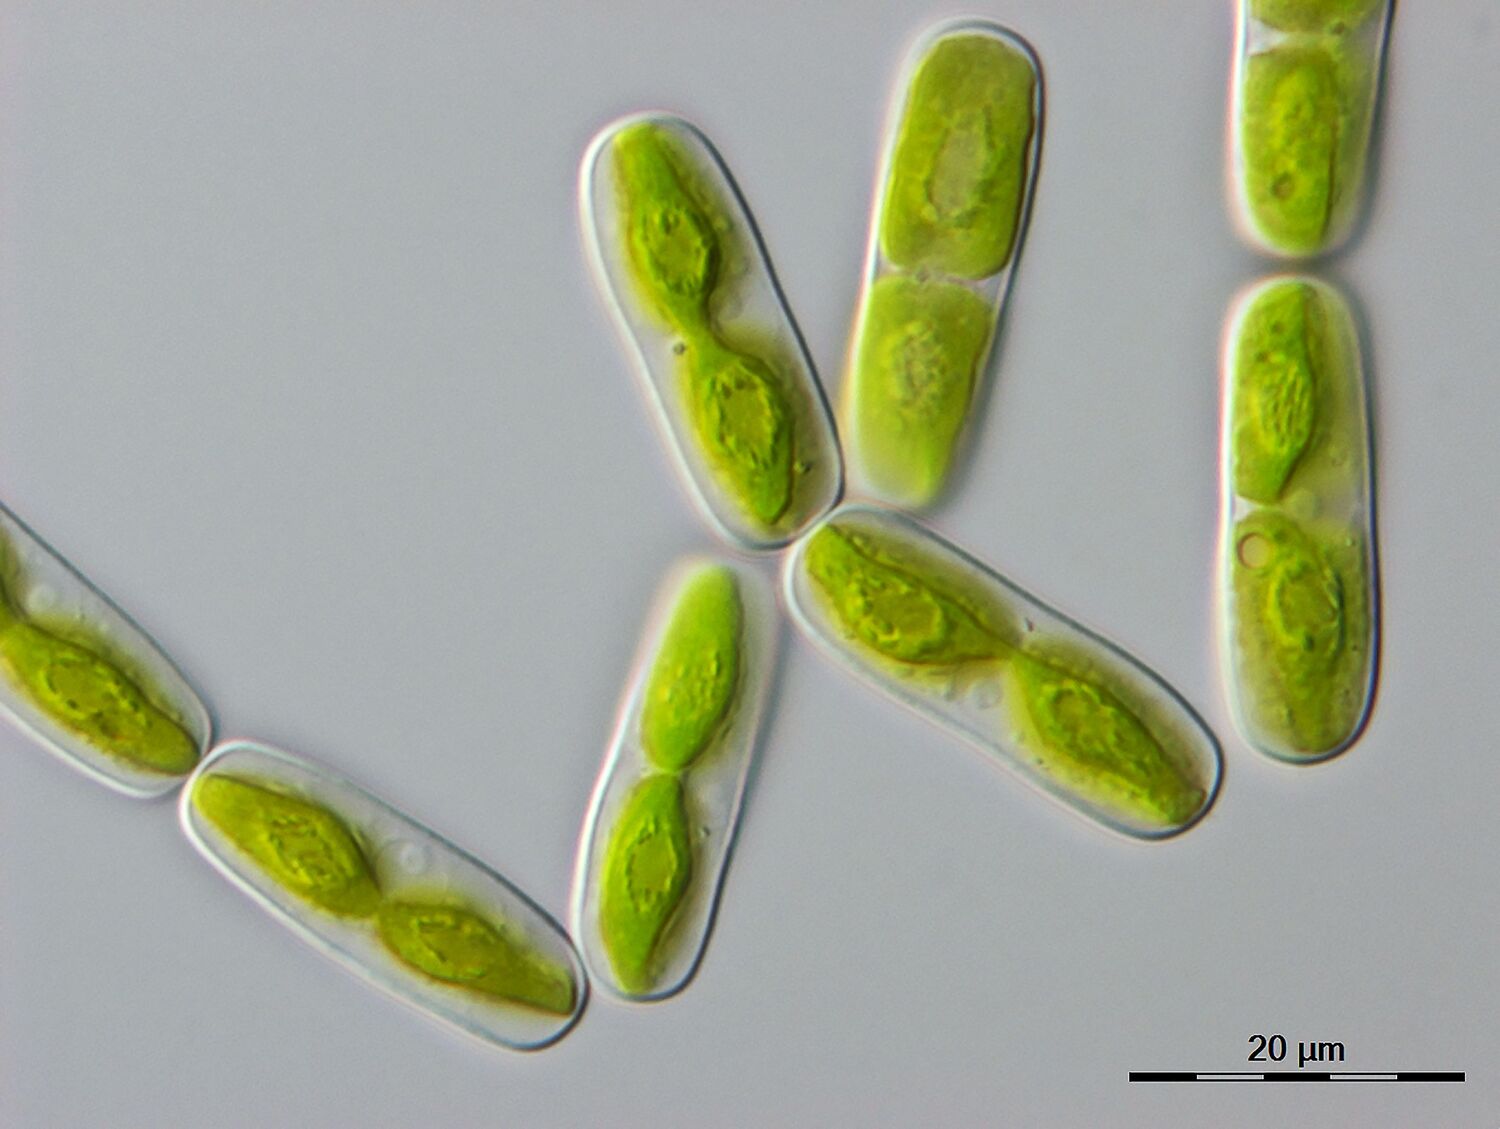 Mikroskopische Aufnahme einer der engsten Verwandten der Landpflanzen, einer einzelligen Alge namens Mesotaenium endlicherianum (20 Mikrometer entsprechen 0,02 Millimetern).